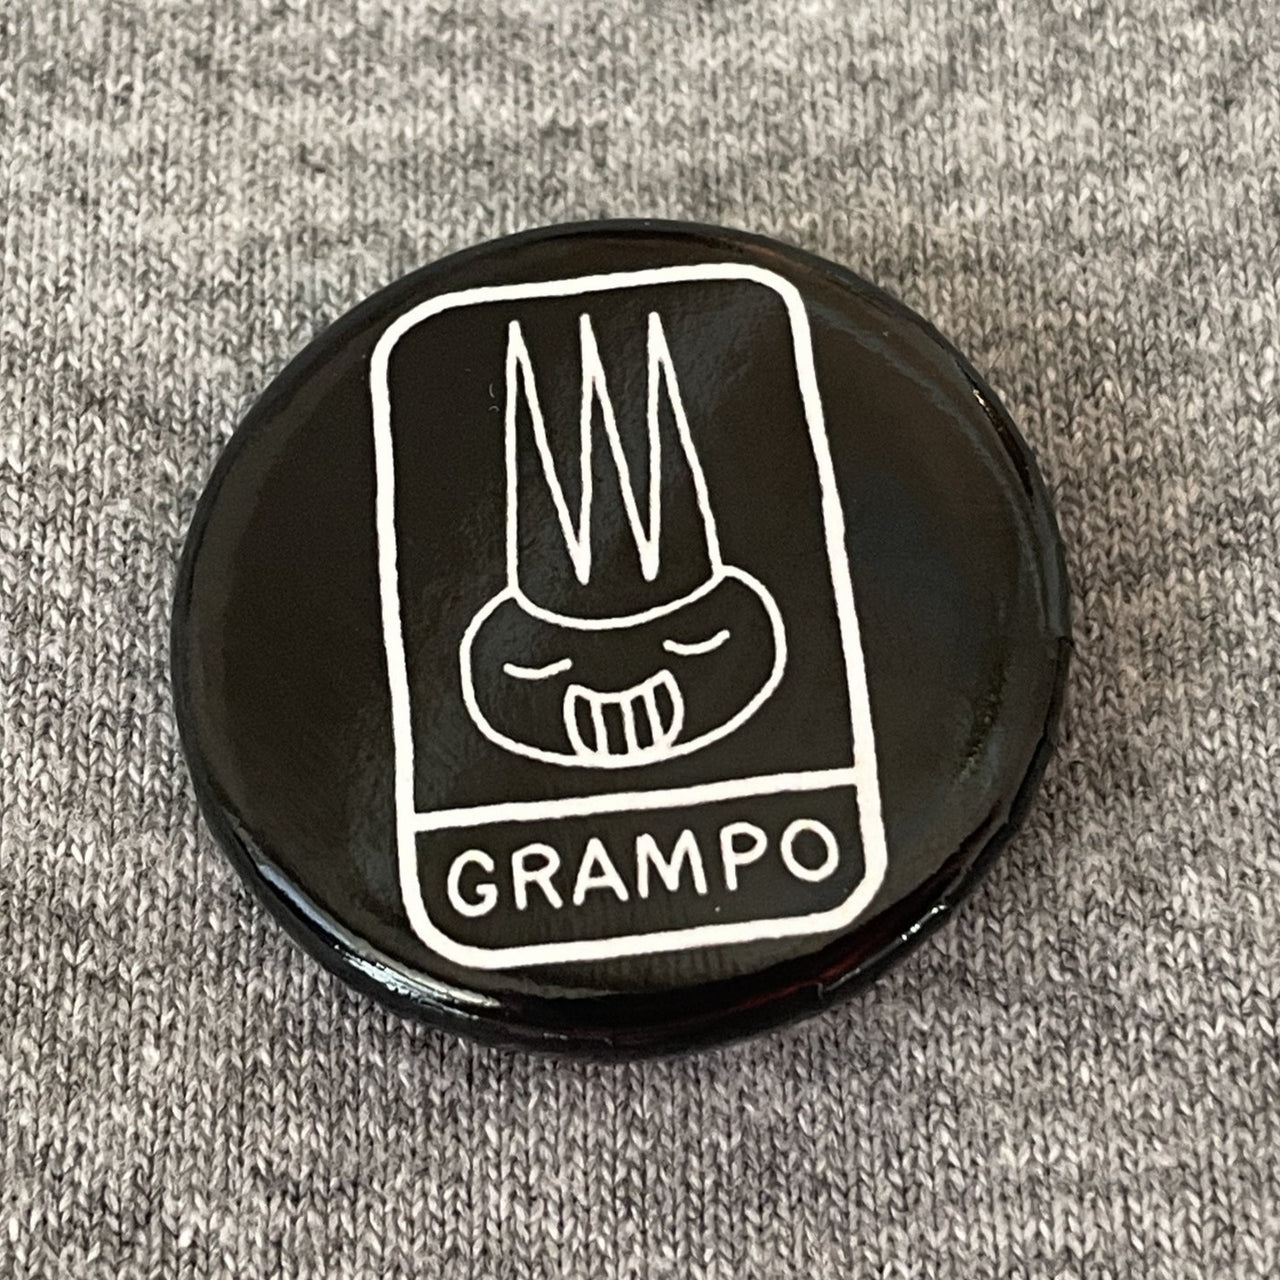 Grampo button